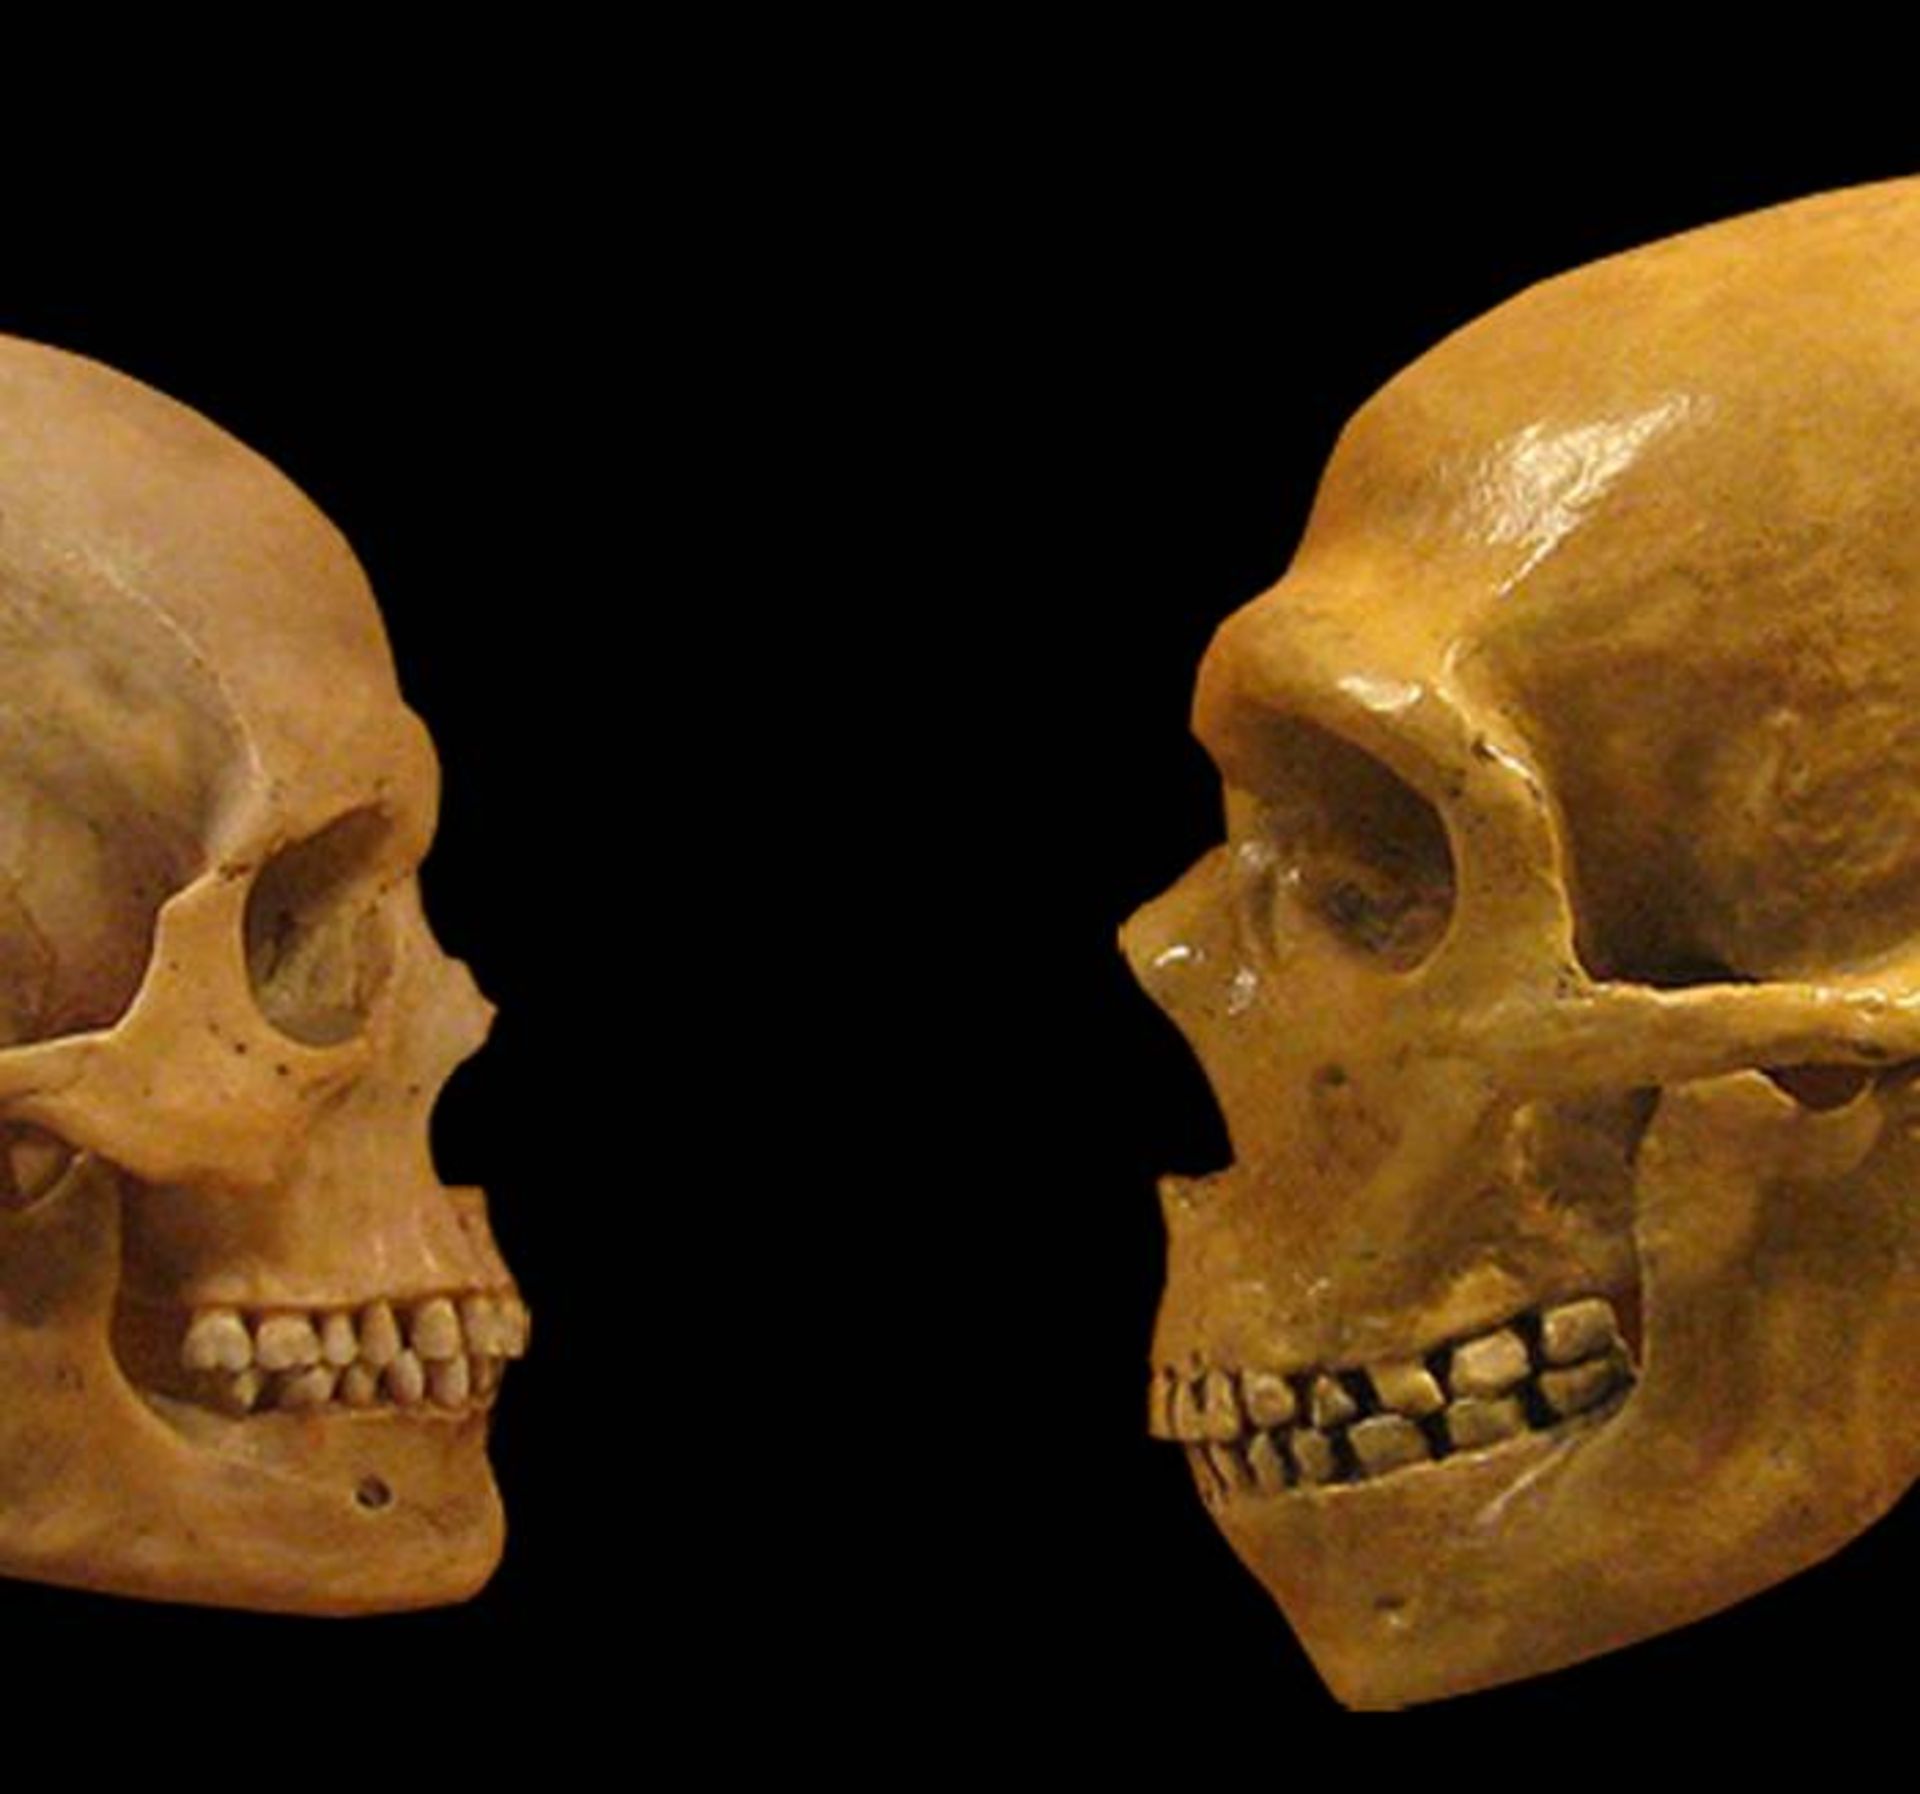 جمجمه نئاندرتال (سمت راست) در مقایسه با جمجمه انسان خردمند